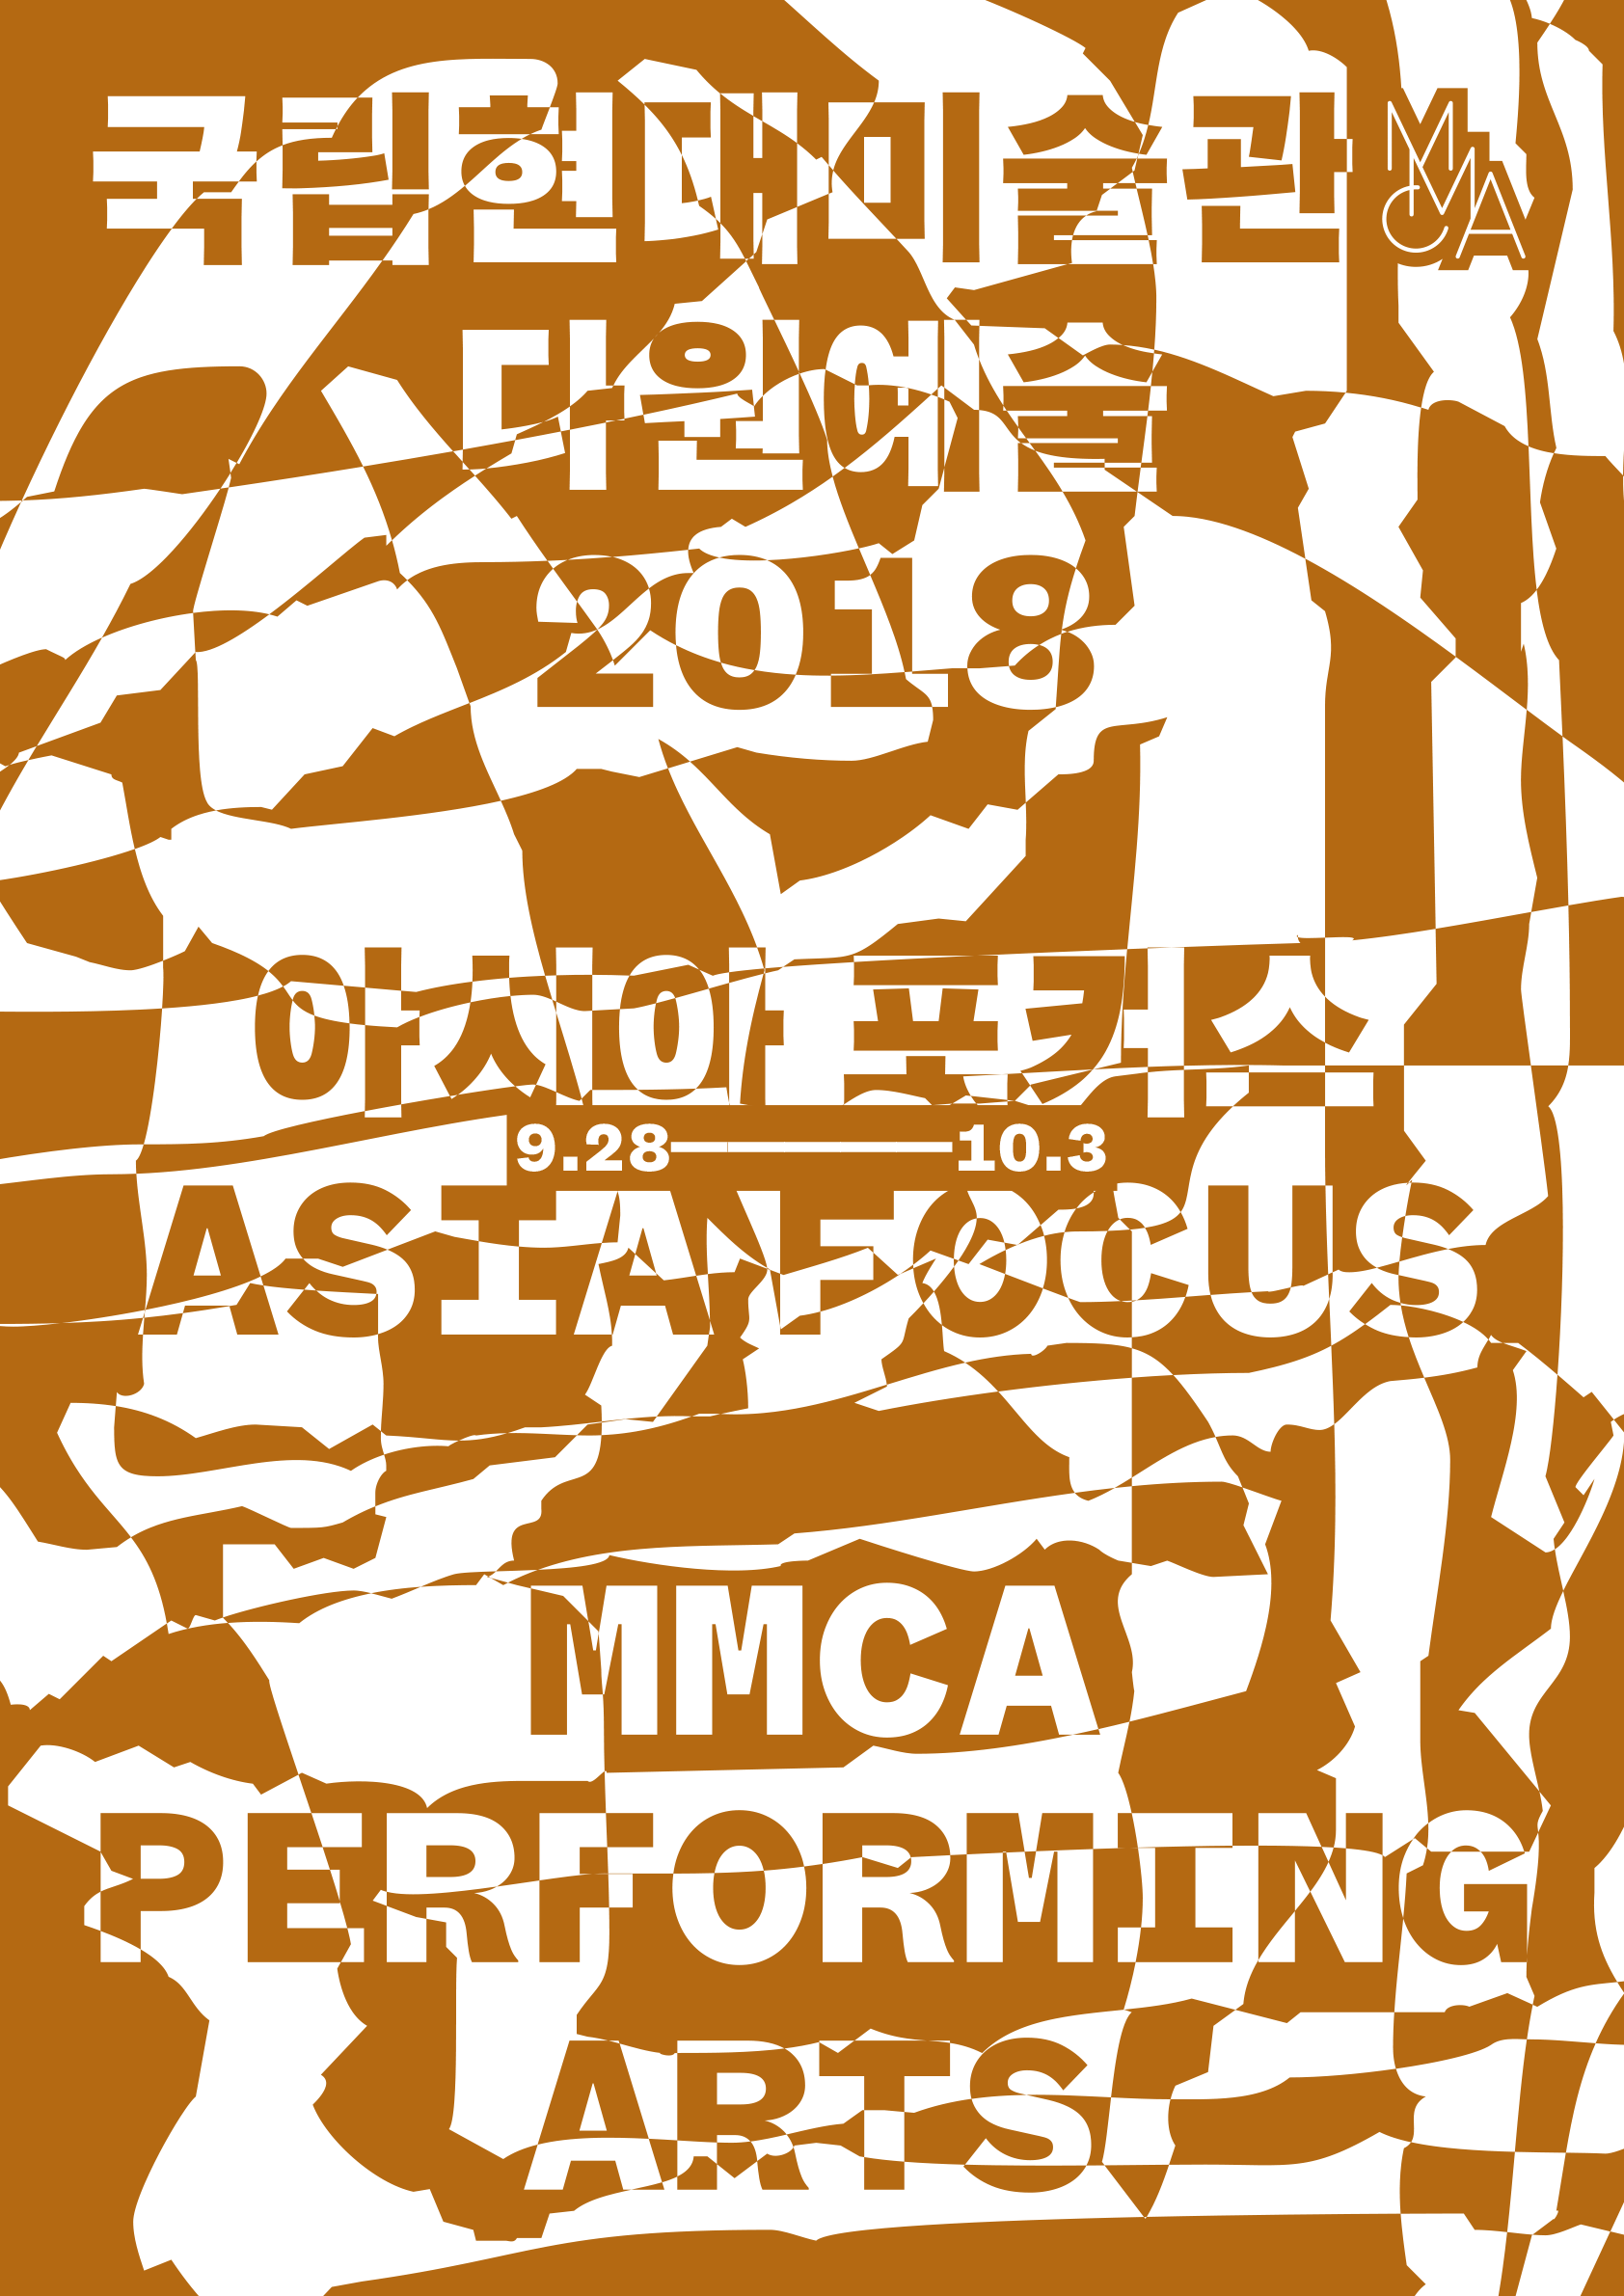 MMCA-2018-AF-poster-print